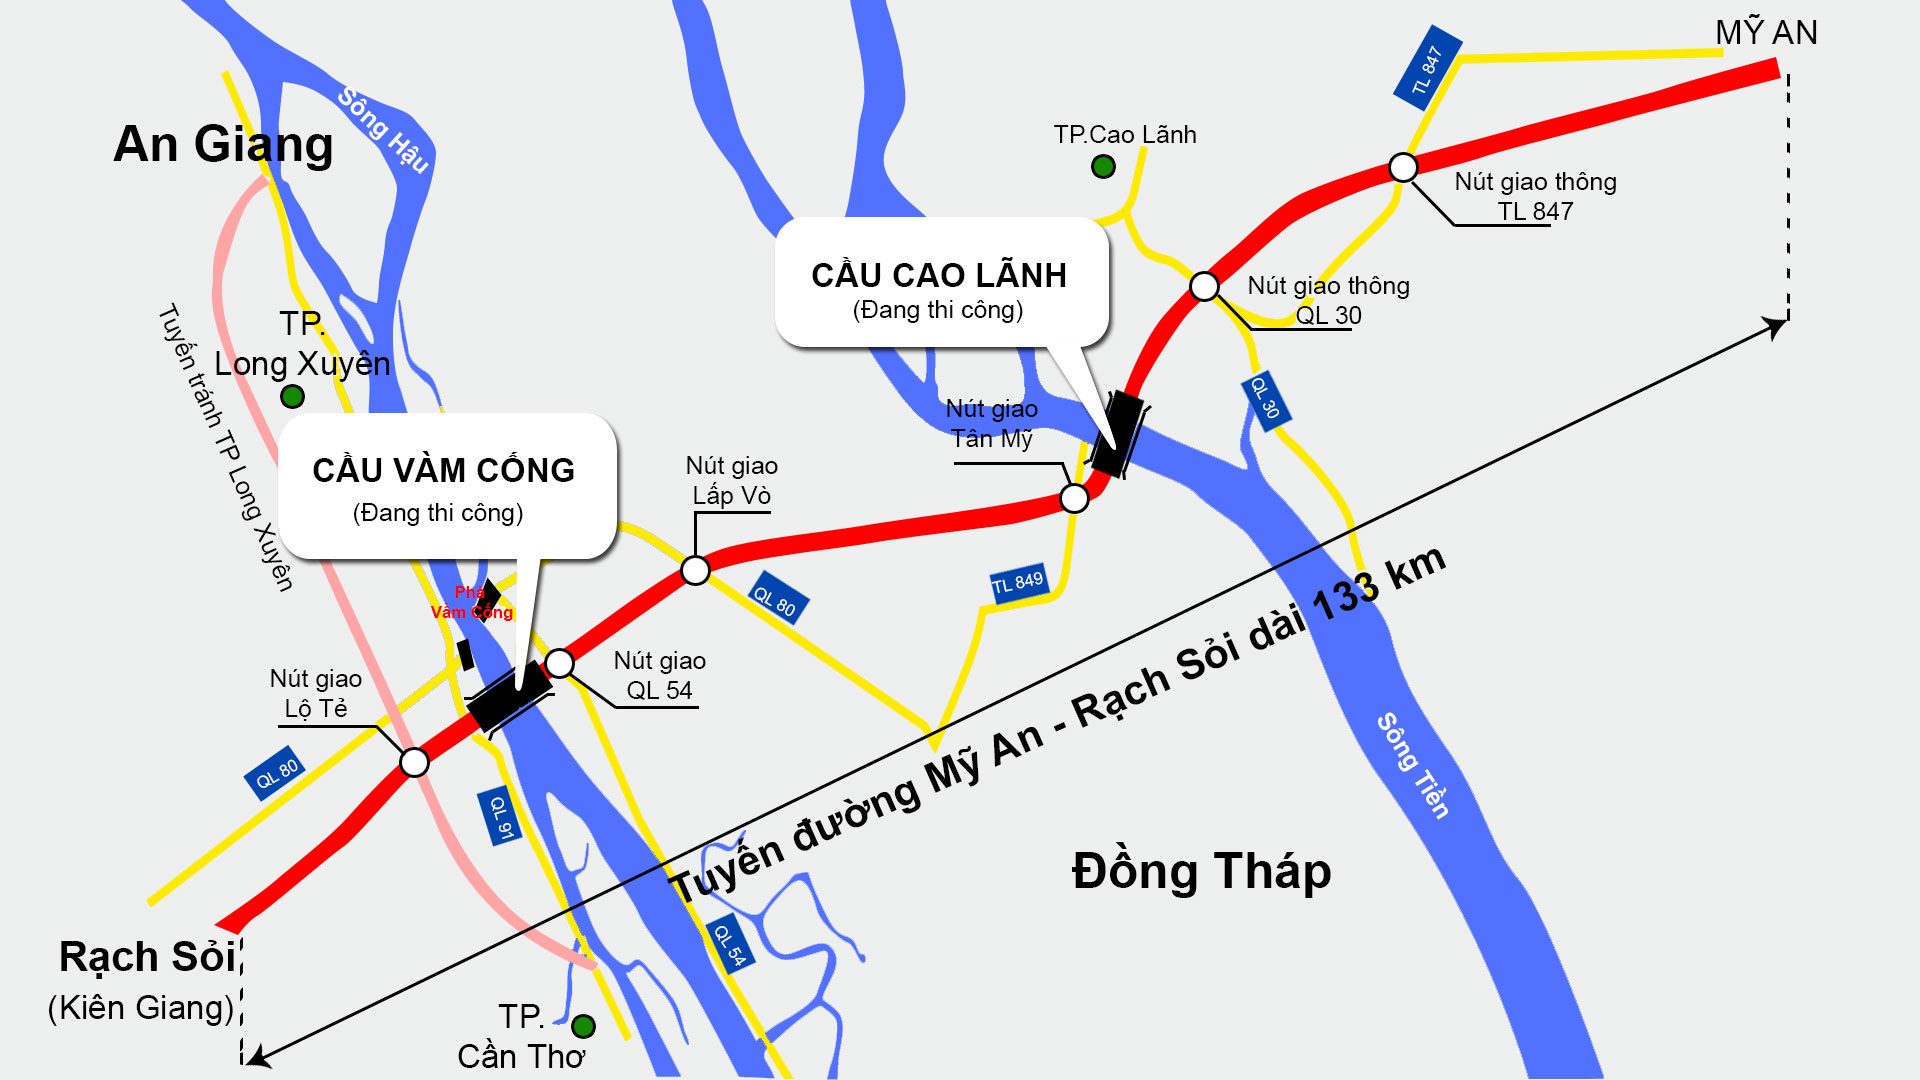 Tuyến cao tốc Bắc - Nam phía tây (updated to 2024):
Tuyến cao tốc Bắc - Nam phía tây sẽ được đưa vào sử dụng vào năm 2024, đi qua các địa phương của Việt Nam từ phía Tây sang phía Đông. Tuyến đường này sẽ tạo ra sự kết nối thông suốt giữa các khu vực, giúp cho giao thương, vận tải và kinh tế phát triển hơn nữa. Với đường cao tốc này, du khách sẽ có dịp khám phá nhiều danh thắng và cảnh đẹp Việt Nam.